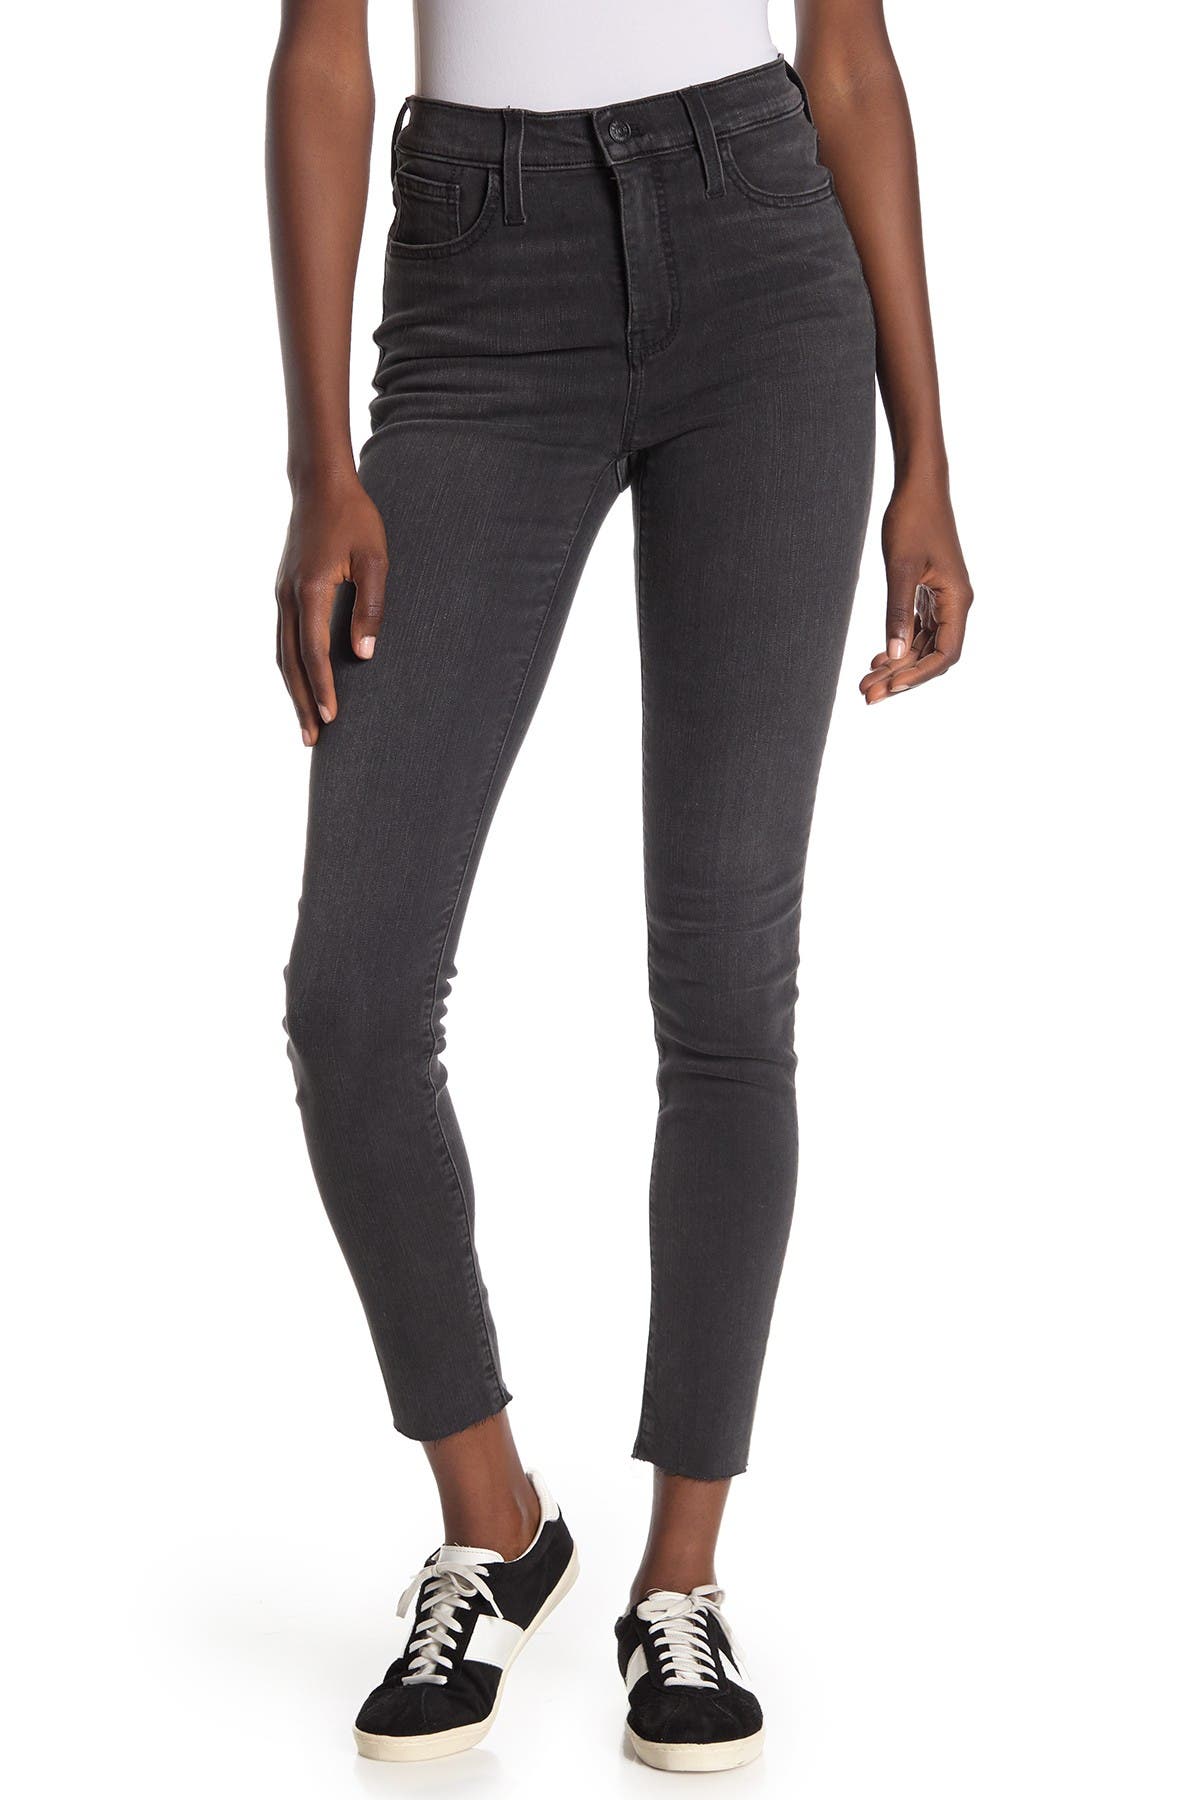 black skinny jeans size 22